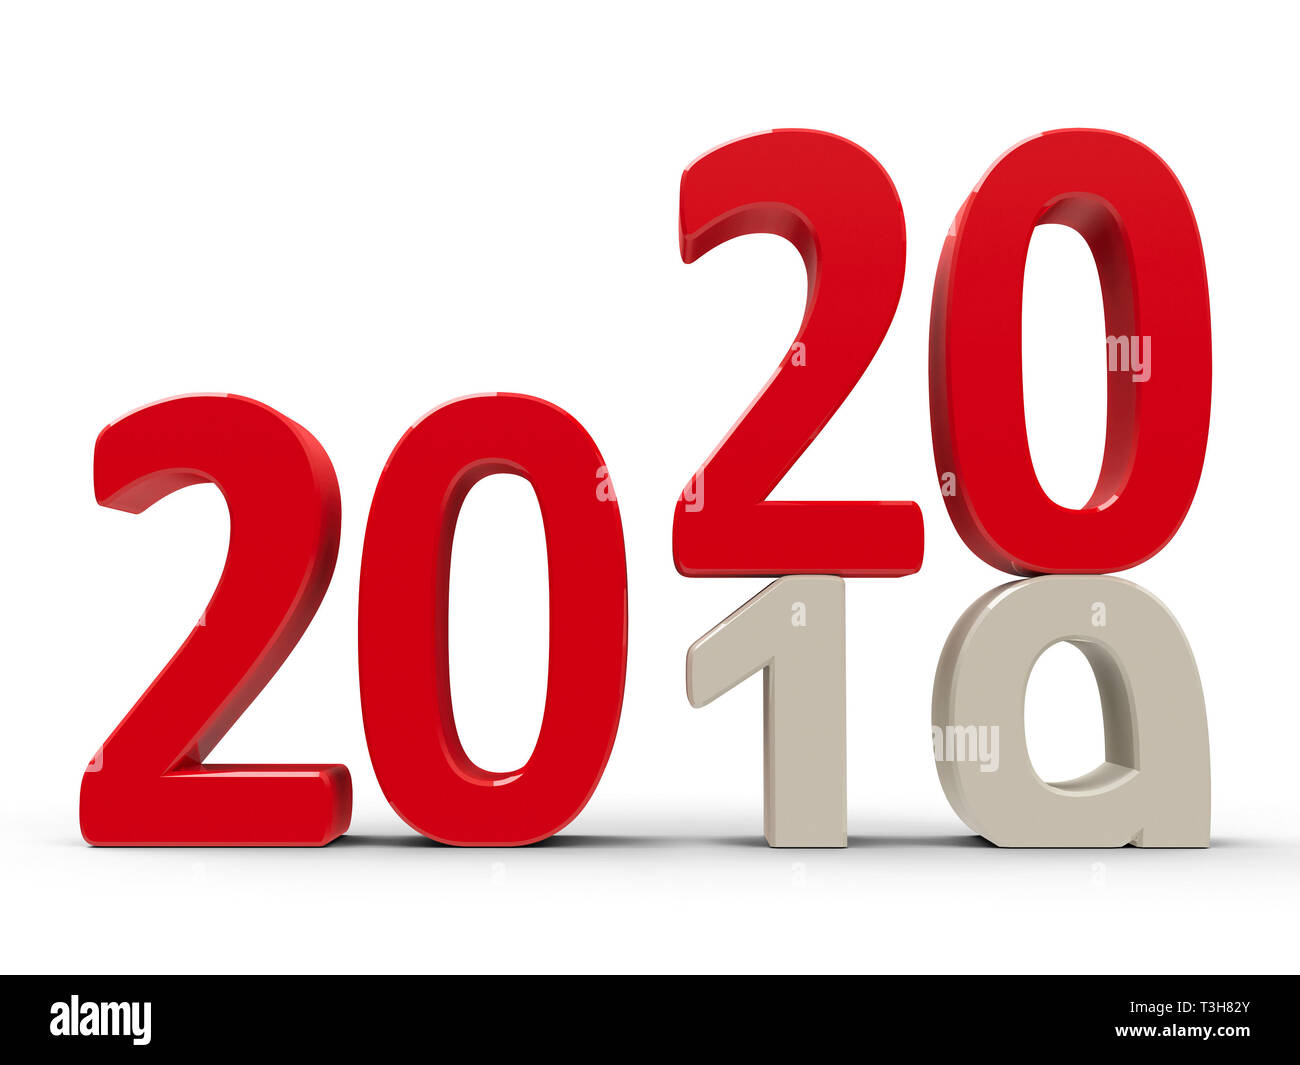 2019-2020 modifica rappresenta il nuovo anno 2020, tridimensionale, rendering 3D illustrazione Foto Stock